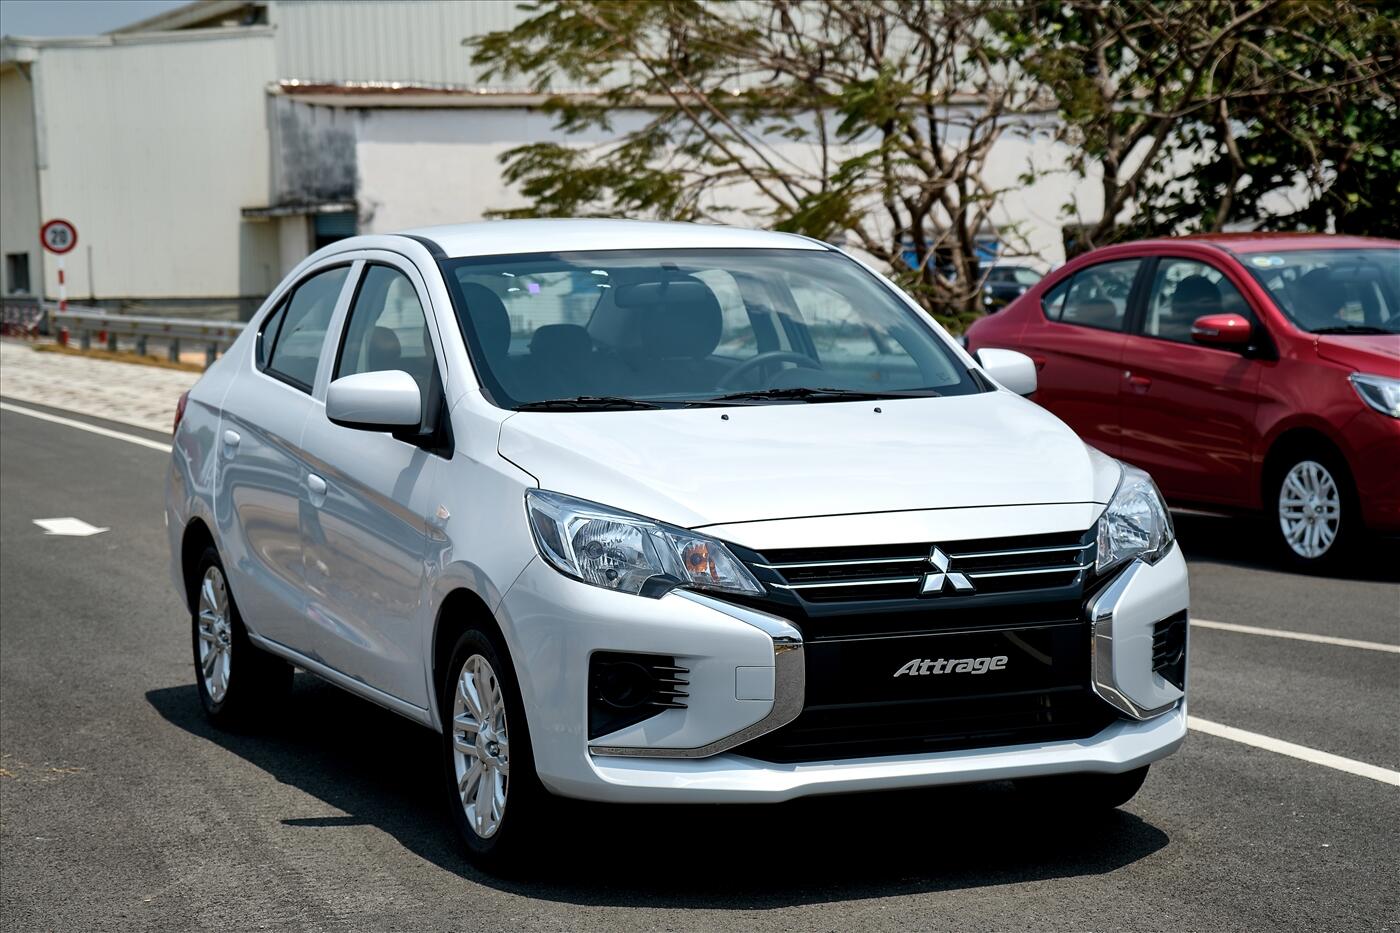 Mitsubishi Motors Việt Nam  NEW ATTRAGE CVT PREMIUM  AN TOÀN HƠN TIỆN  NGHI HƠN GIÁ TRỊ HƠN